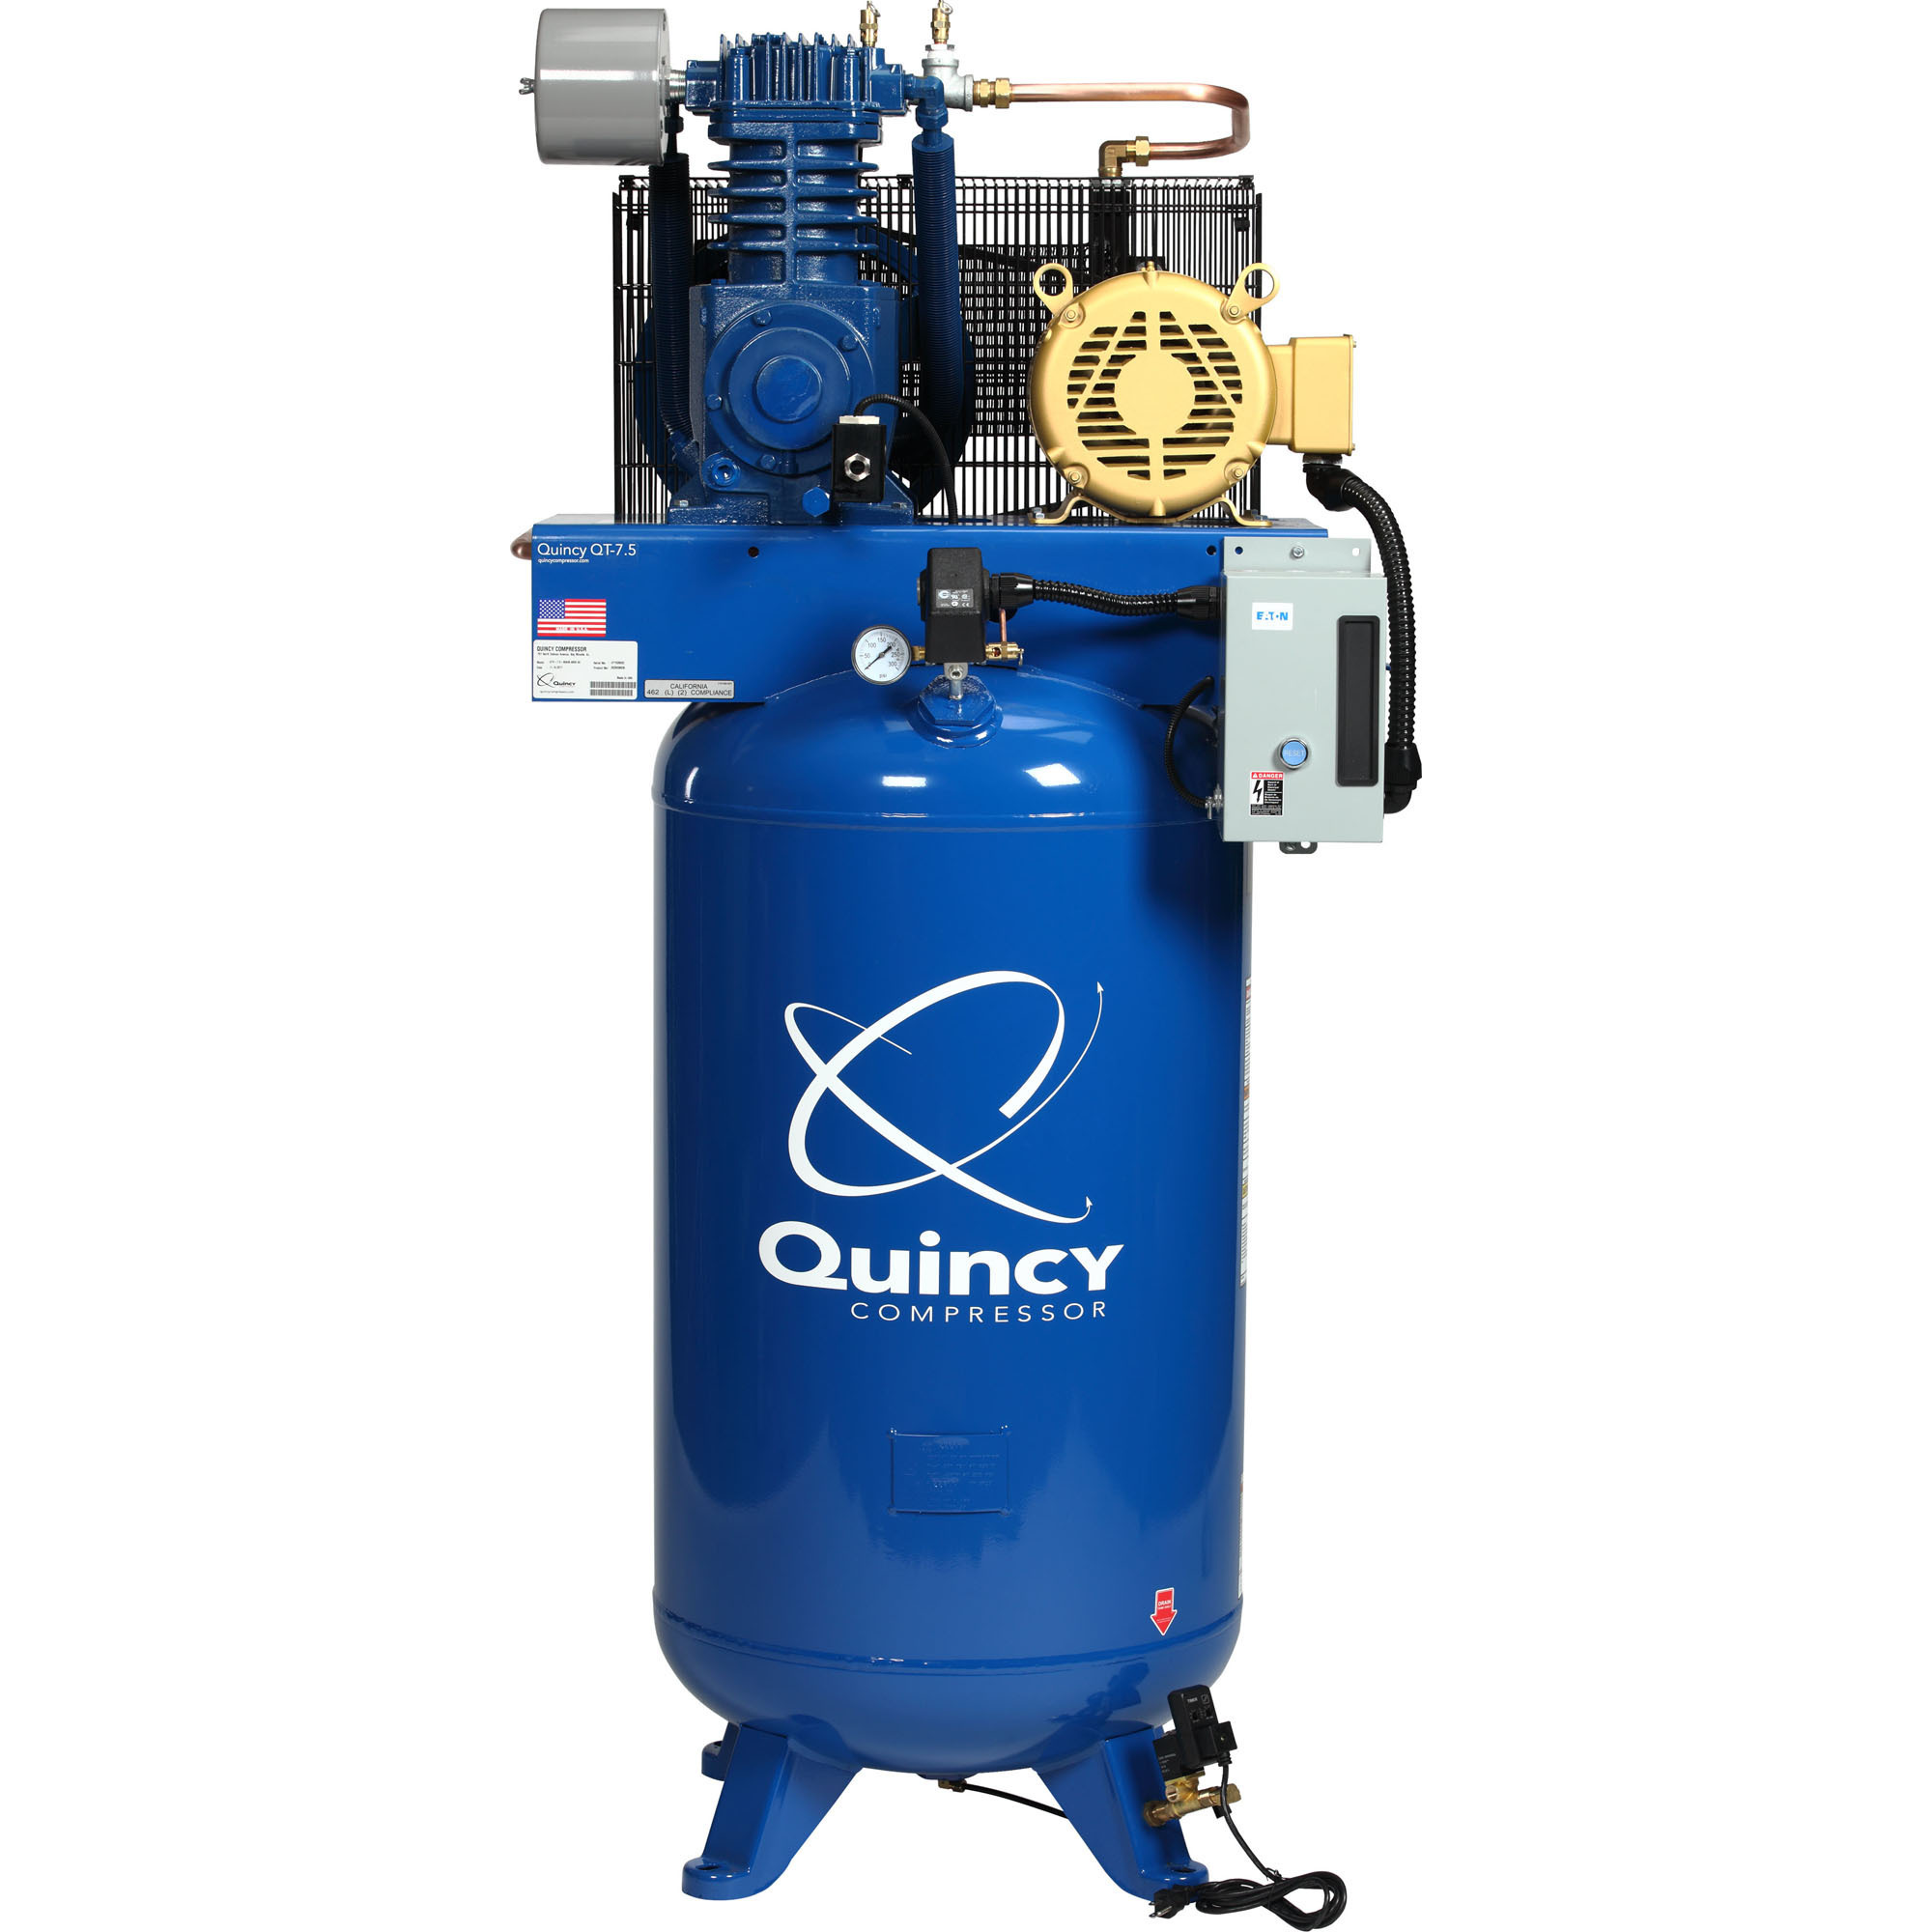 Quincy Compressor 2020040728